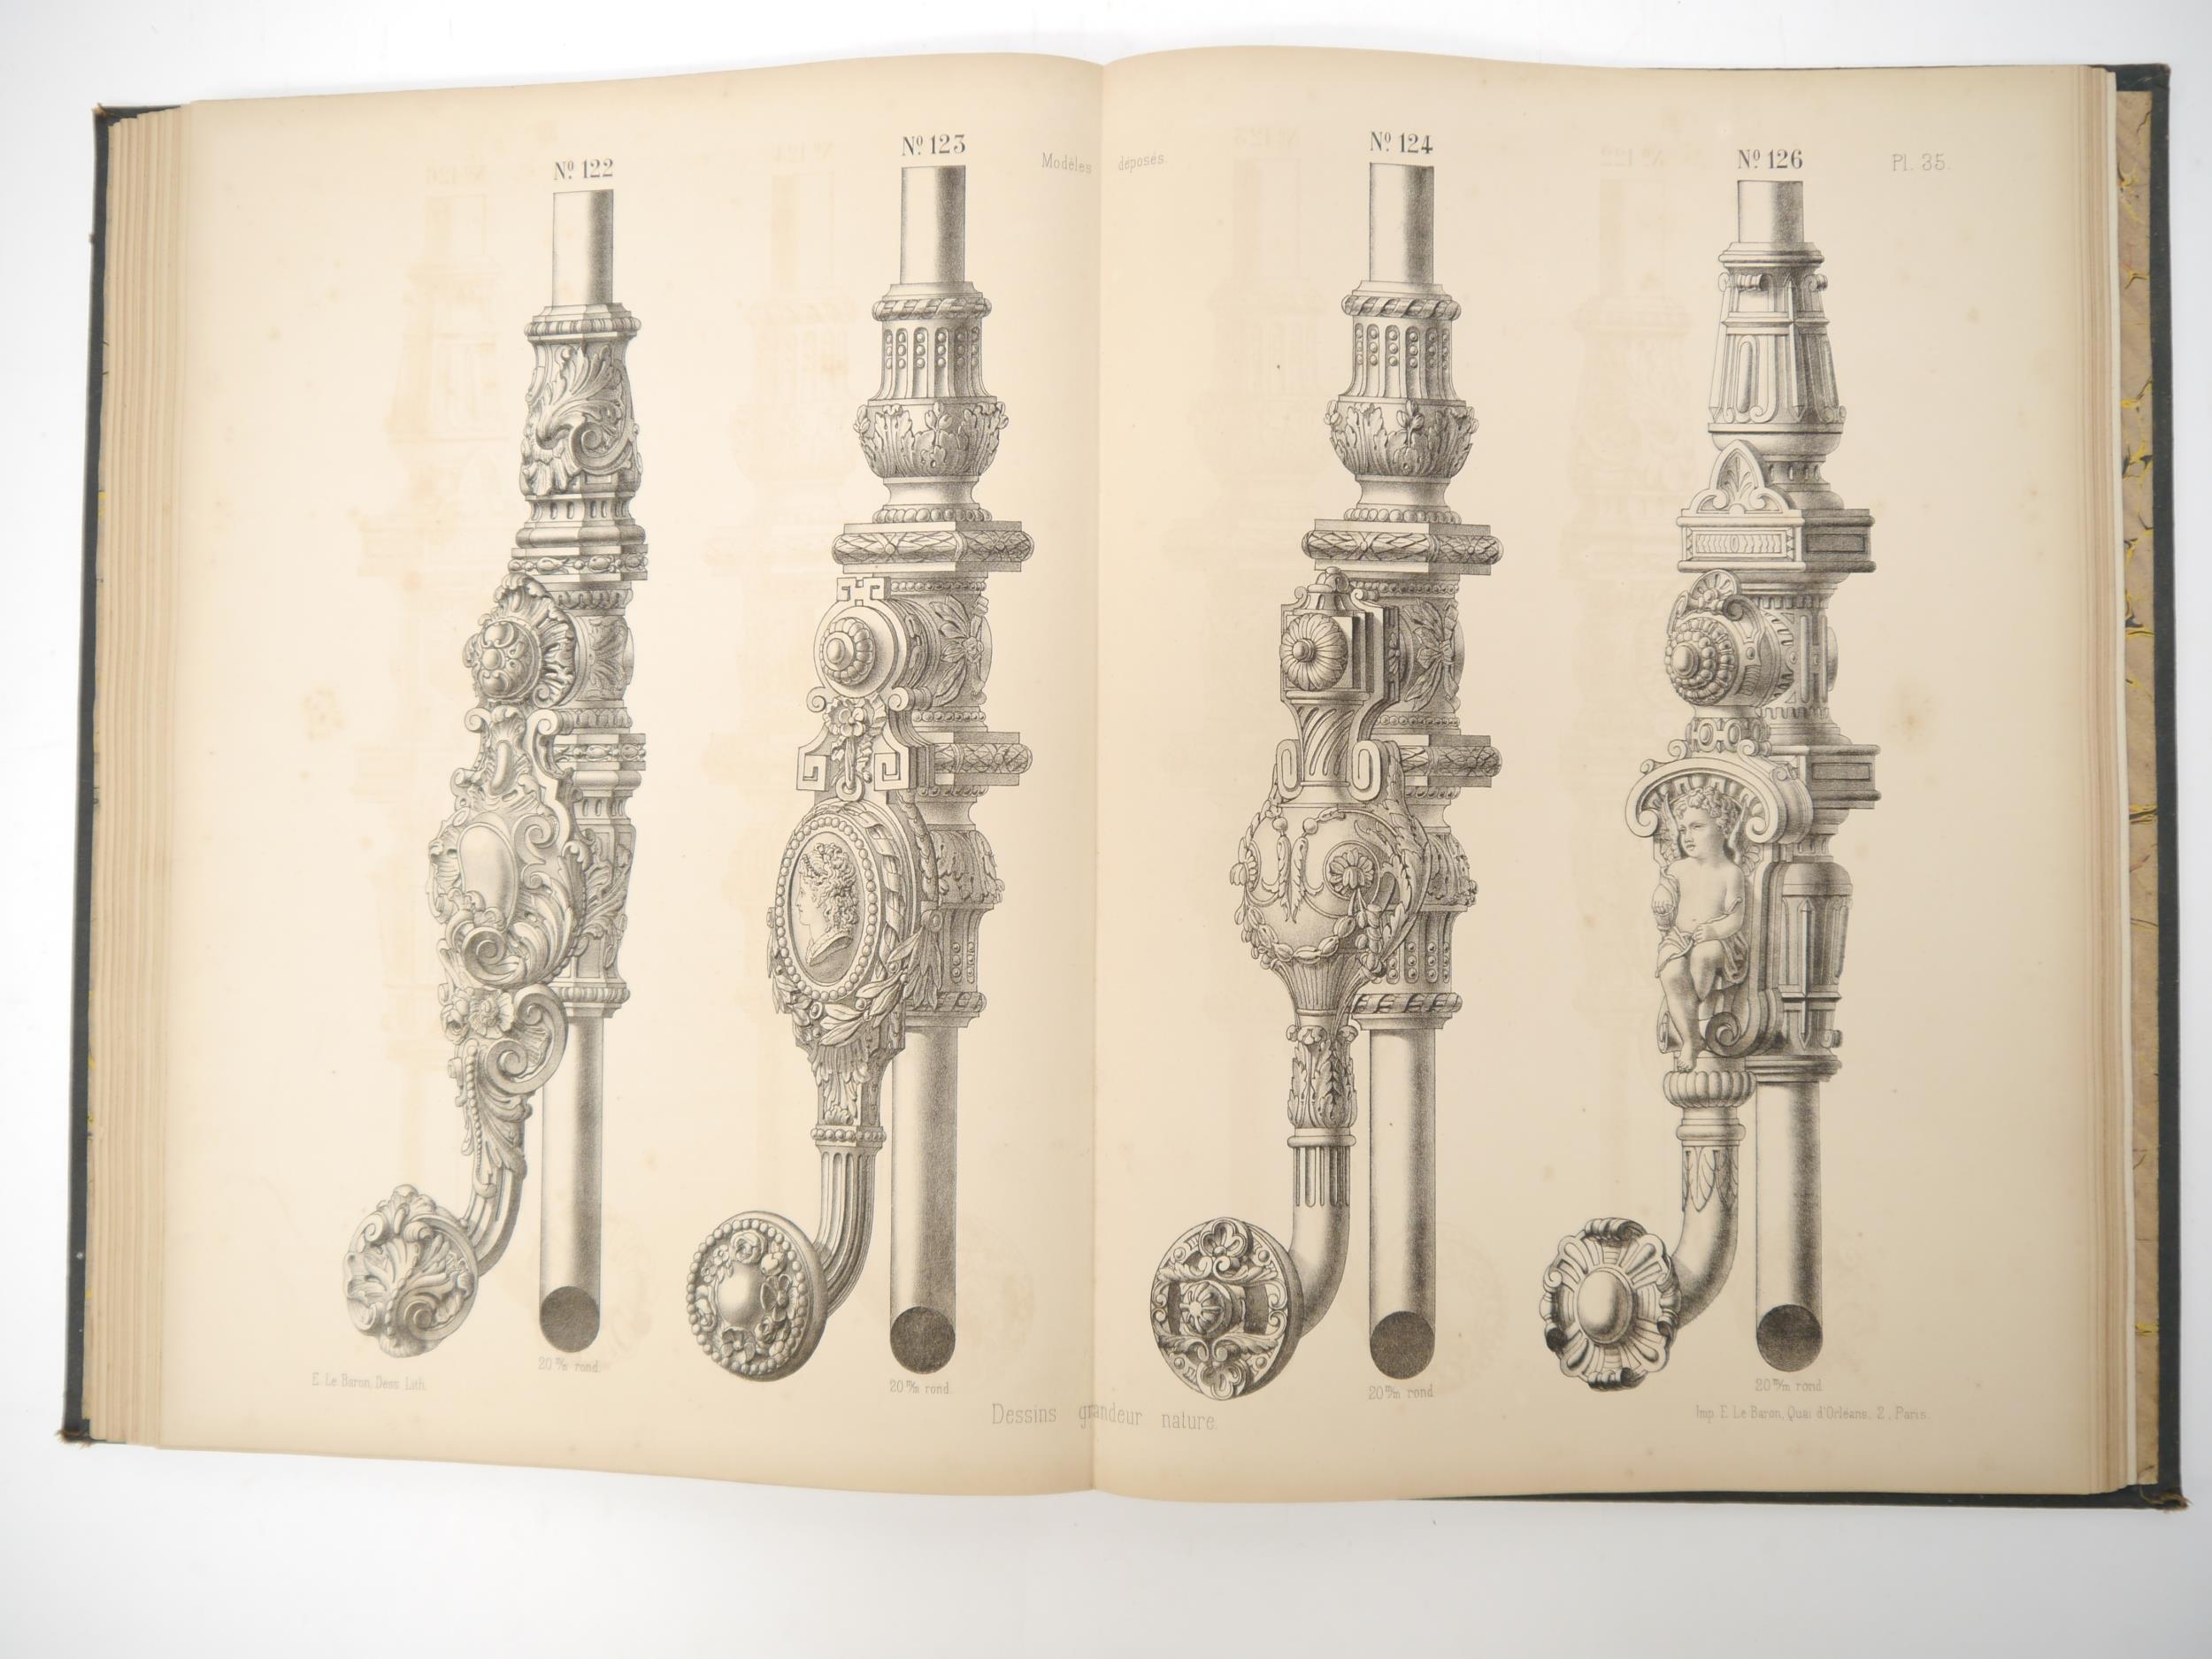 A 19th Century trade catalogue for Maison R. Garnier 'Aperçu des principaux modèles de la maison - Image 4 of 8